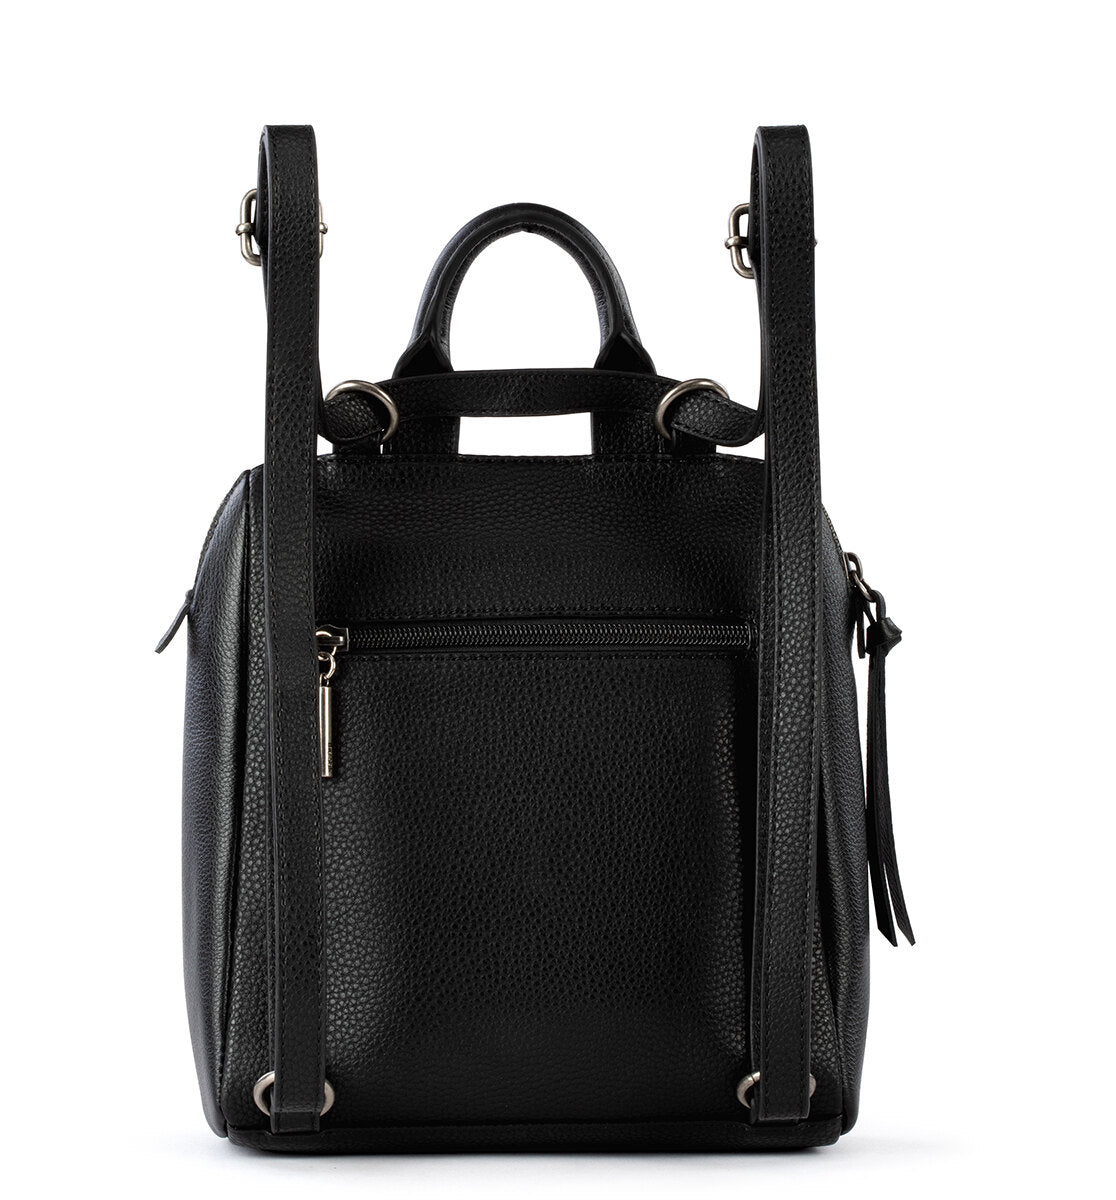 Buy Women Black Casual Backpack Online - 334825 | Allen Solly